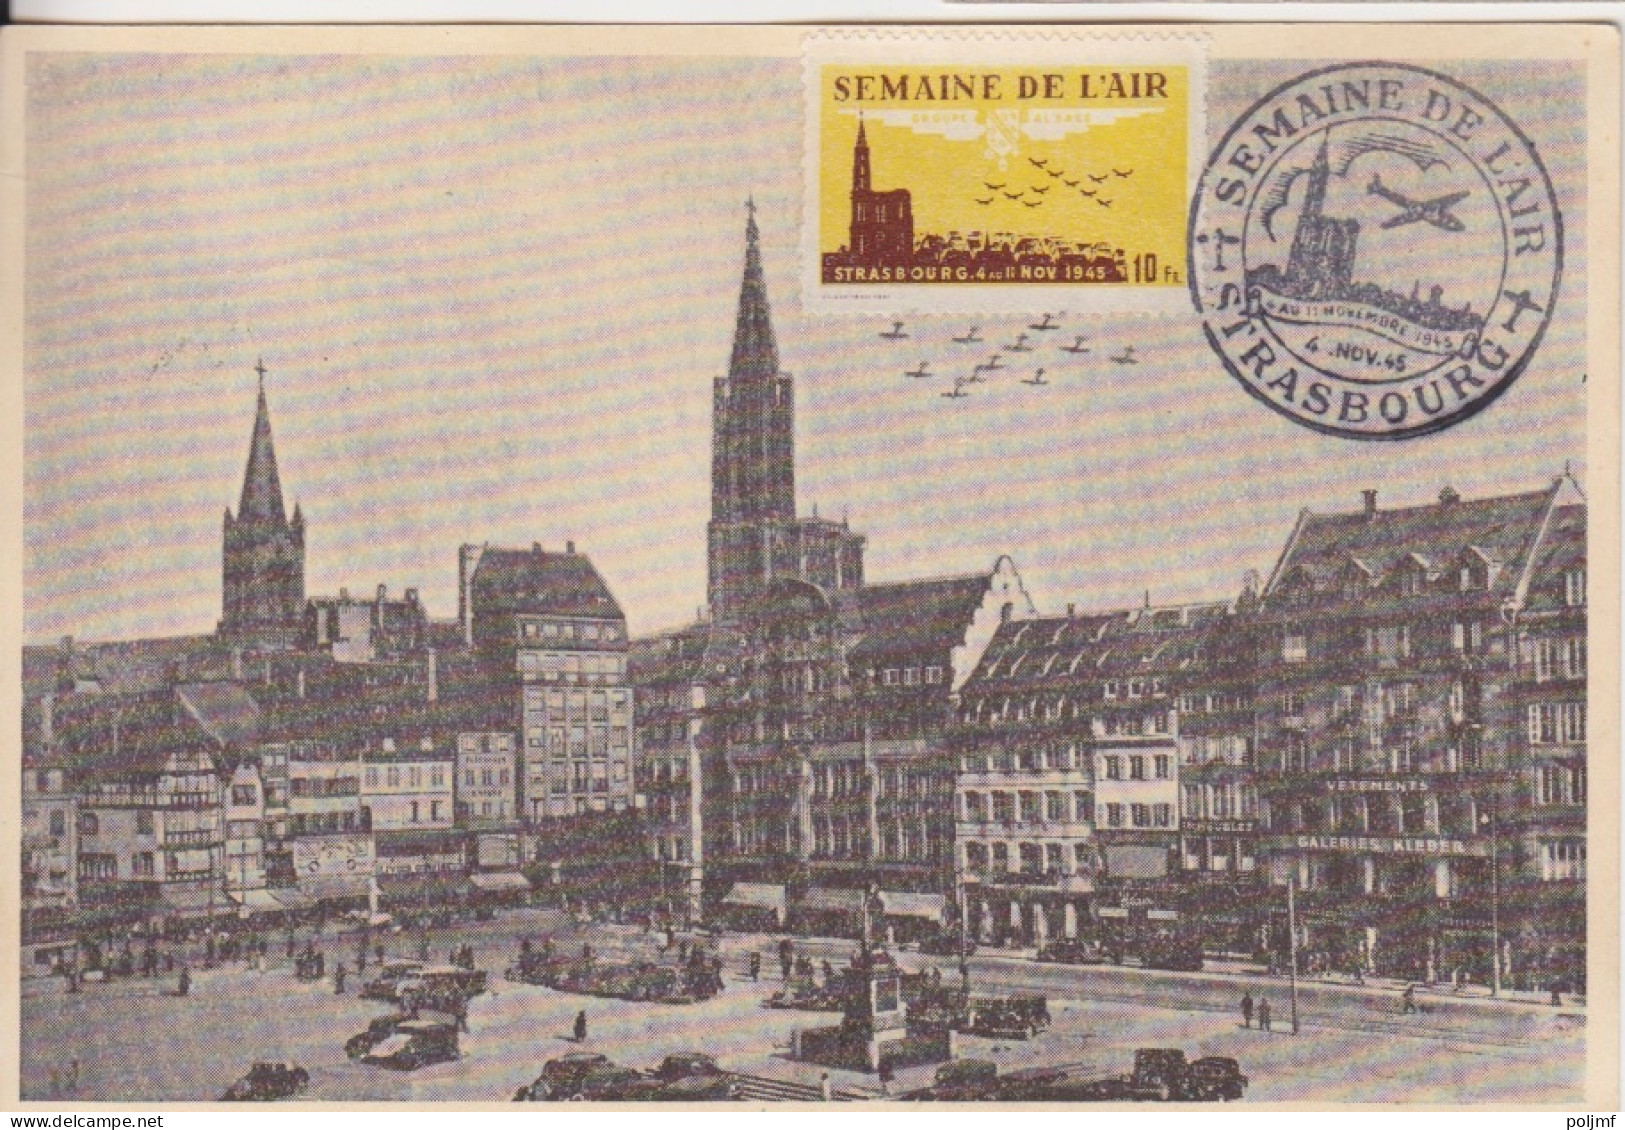 CP (Semaine De L'Air) Obl. GF Strasbourg Le 4 Nov 45 Sur 1f50 Dulac Rose N° 691 + Vignette Semaine De L'Air - 1944-45 Marianne De Dulac